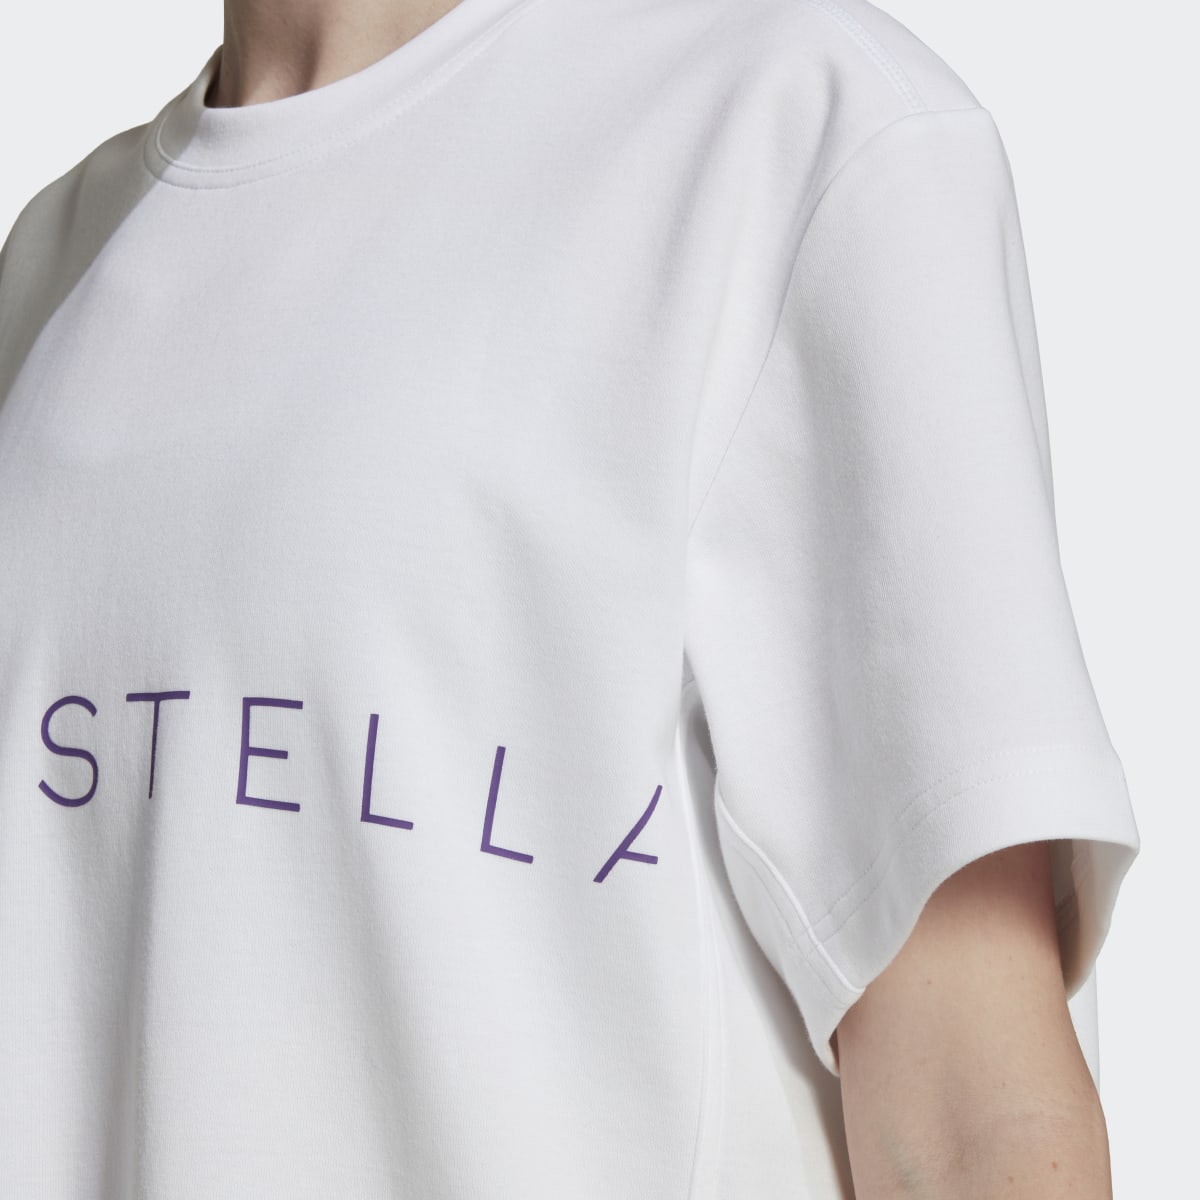 Adidas by Stella McCartney Logo Tee. 6